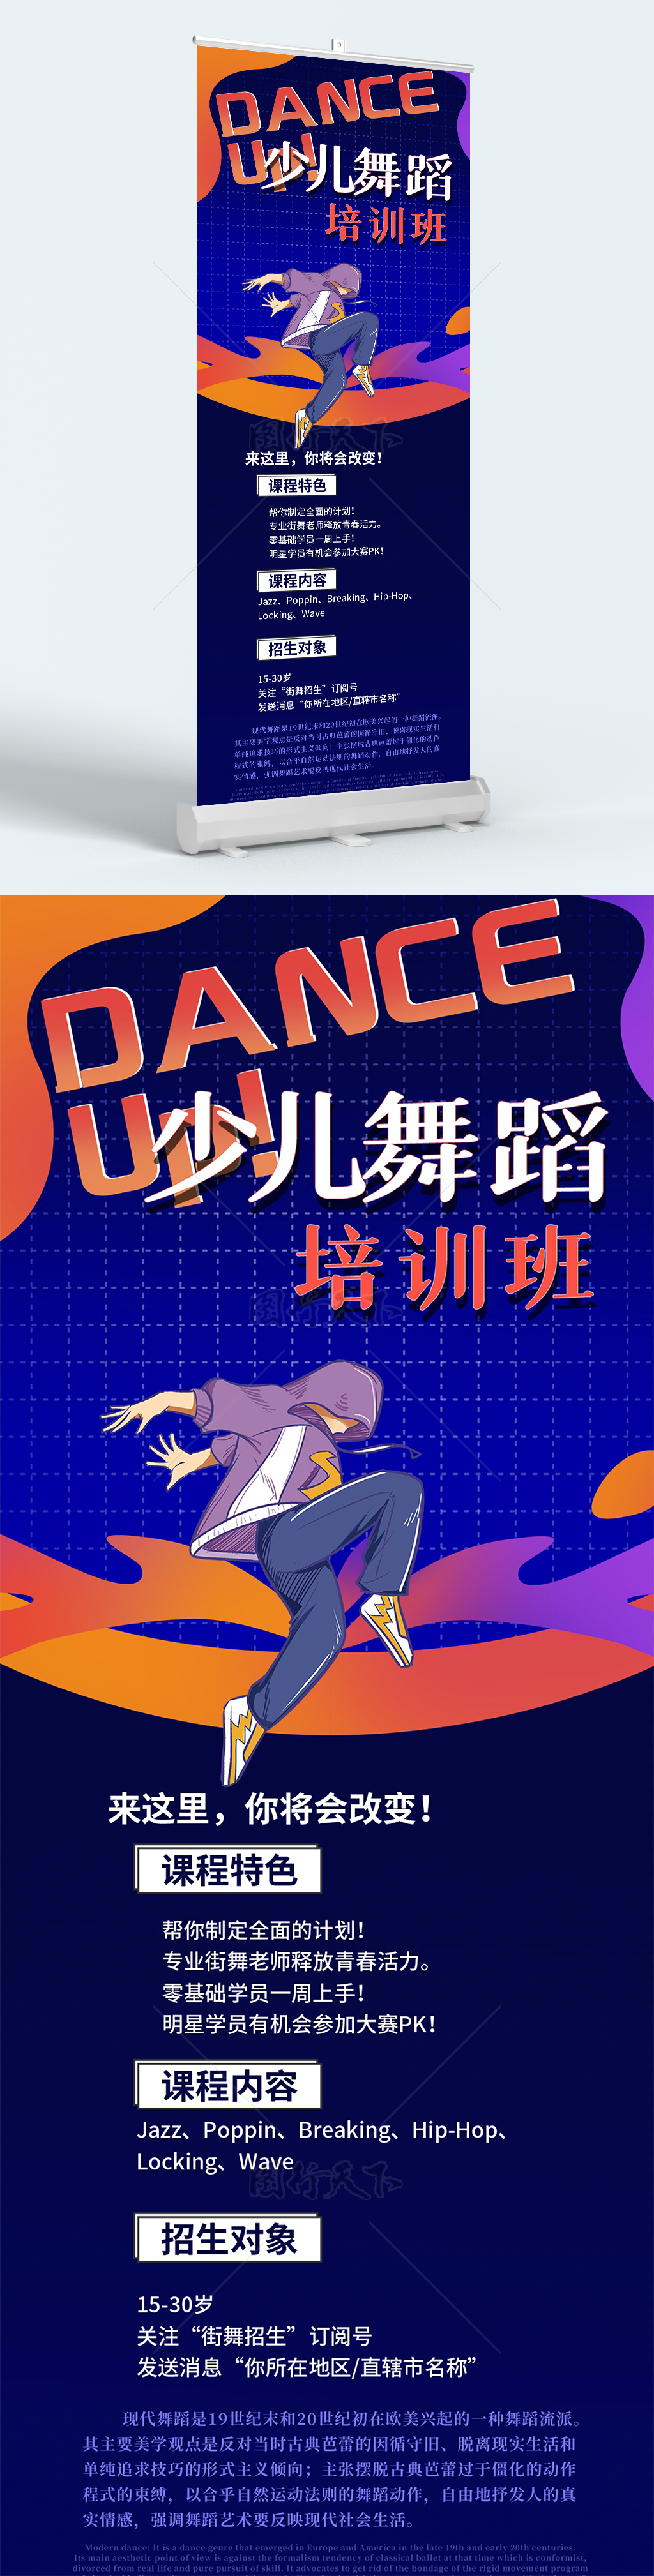 炫酷街舞少儿舞蹈舞动青春促销海报